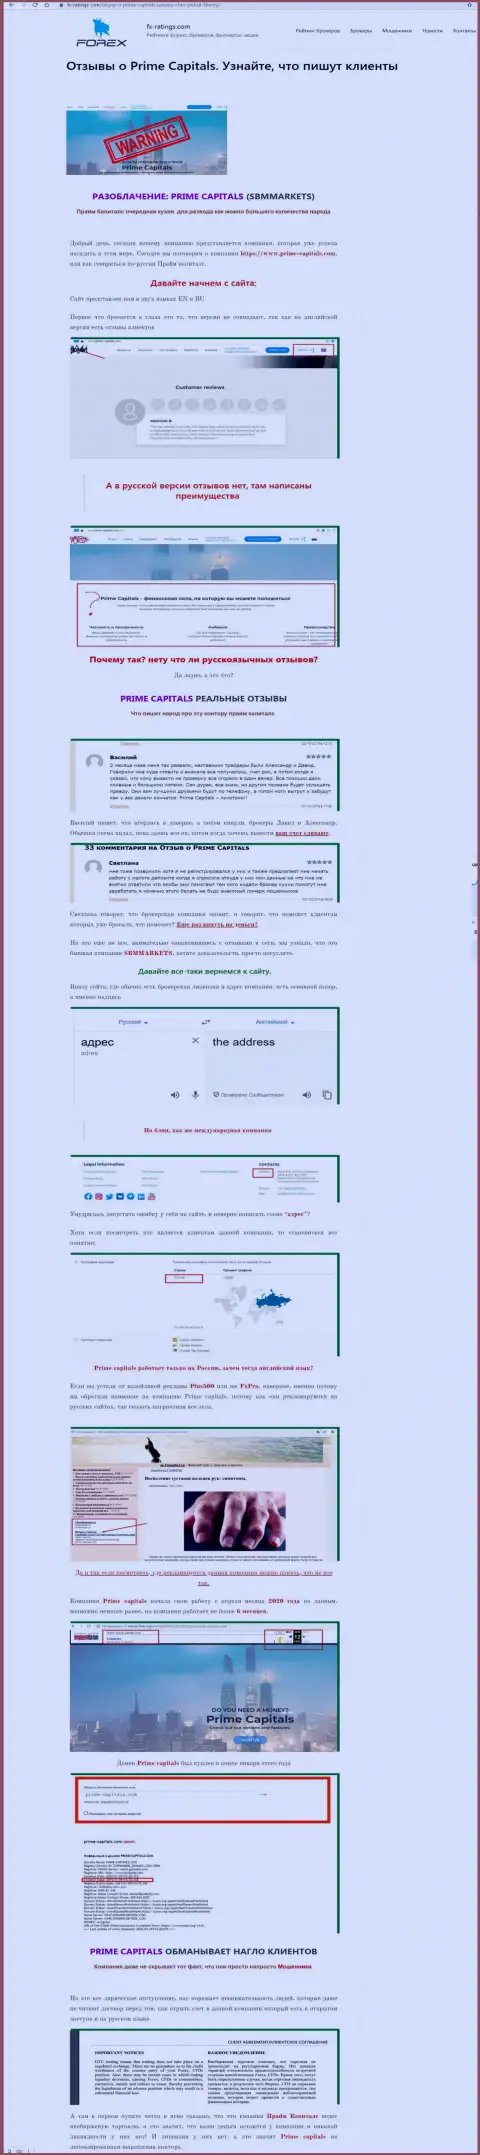 Материал, разоблачающий организацию PrimeCapitals, который позаимствован с веб-сайта с обзорами разных контор